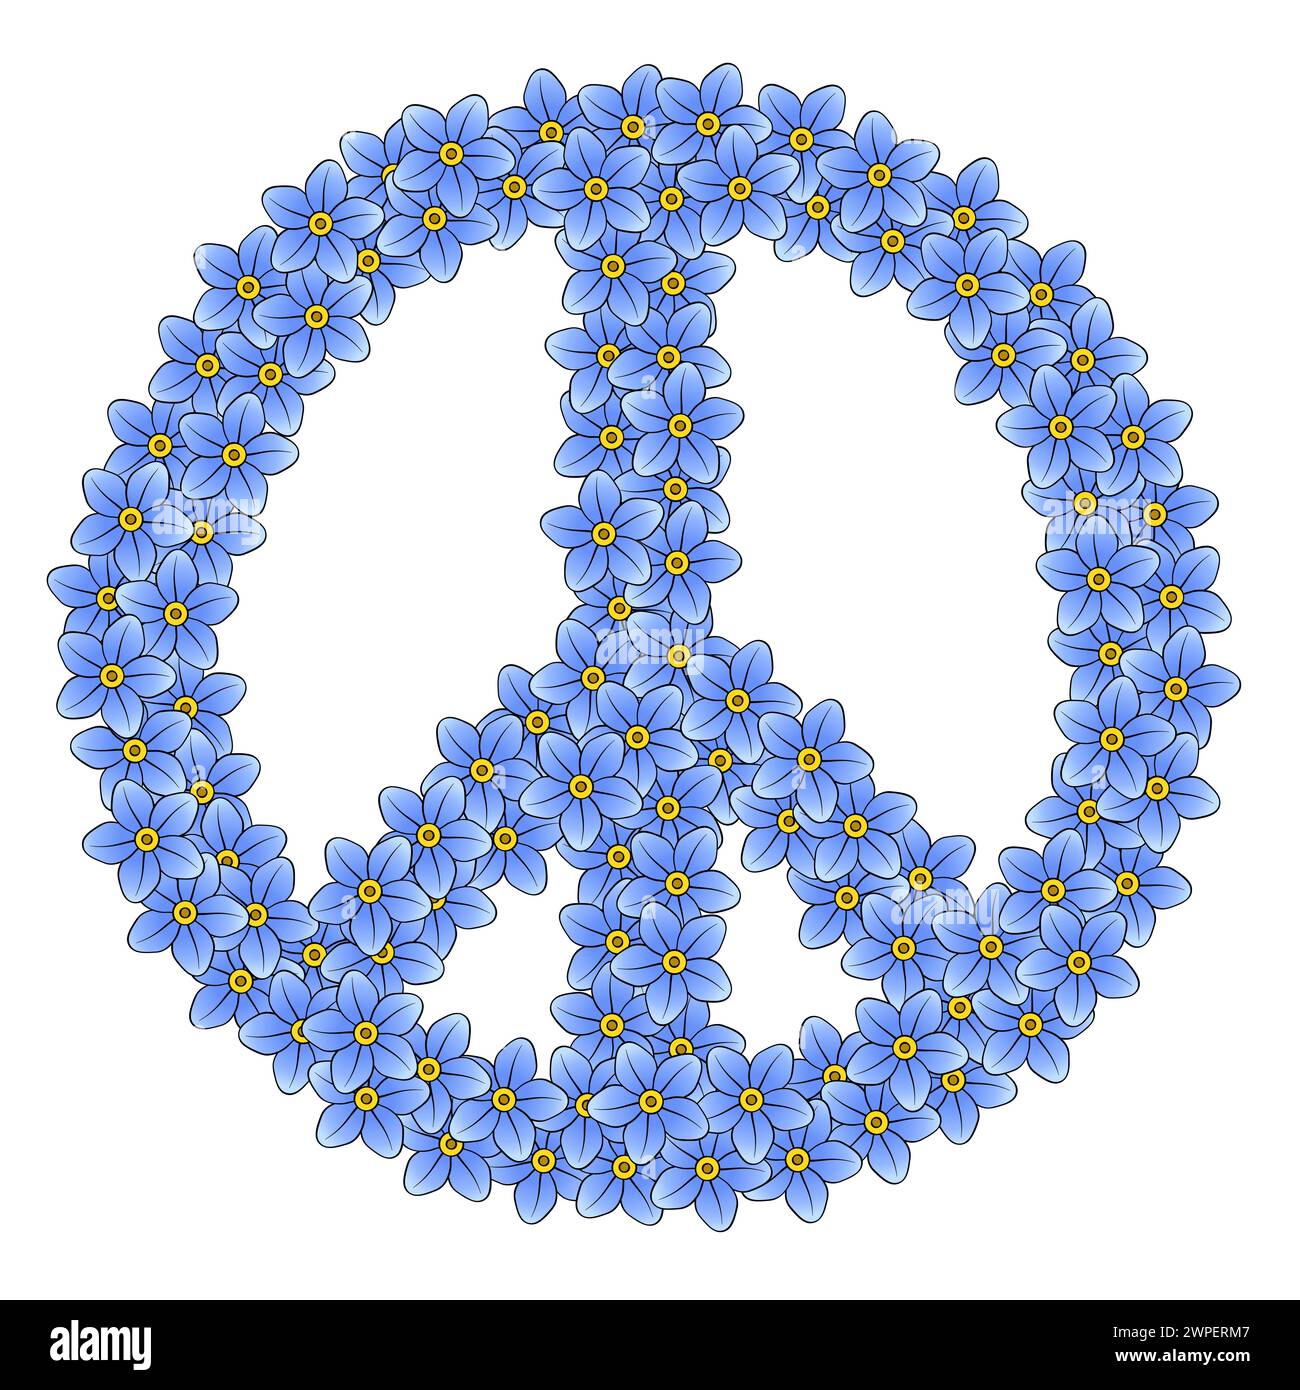 Friedenszeichen aus 111 Vergissmeinsblumen. Aus 111 zufällig angeordneten blauen Blüten, ein Symbol der Antikriegsbewegung. Stockfoto